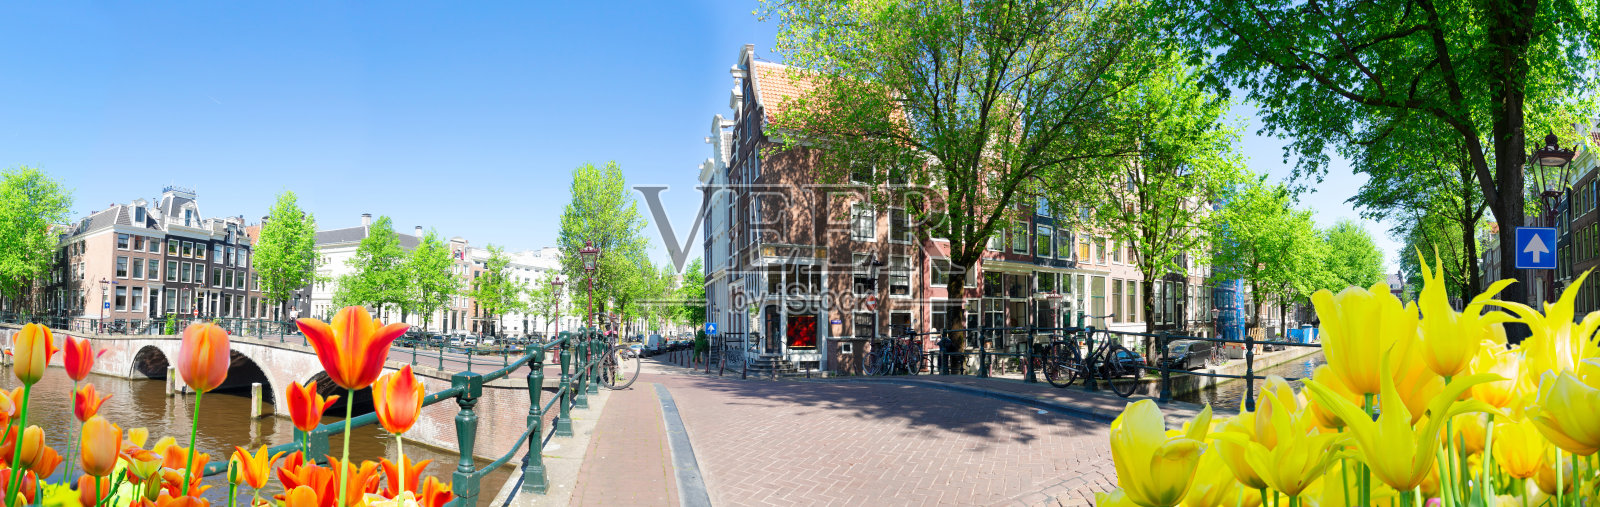 荷兰阿姆斯特丹的房屋照片摄影图片